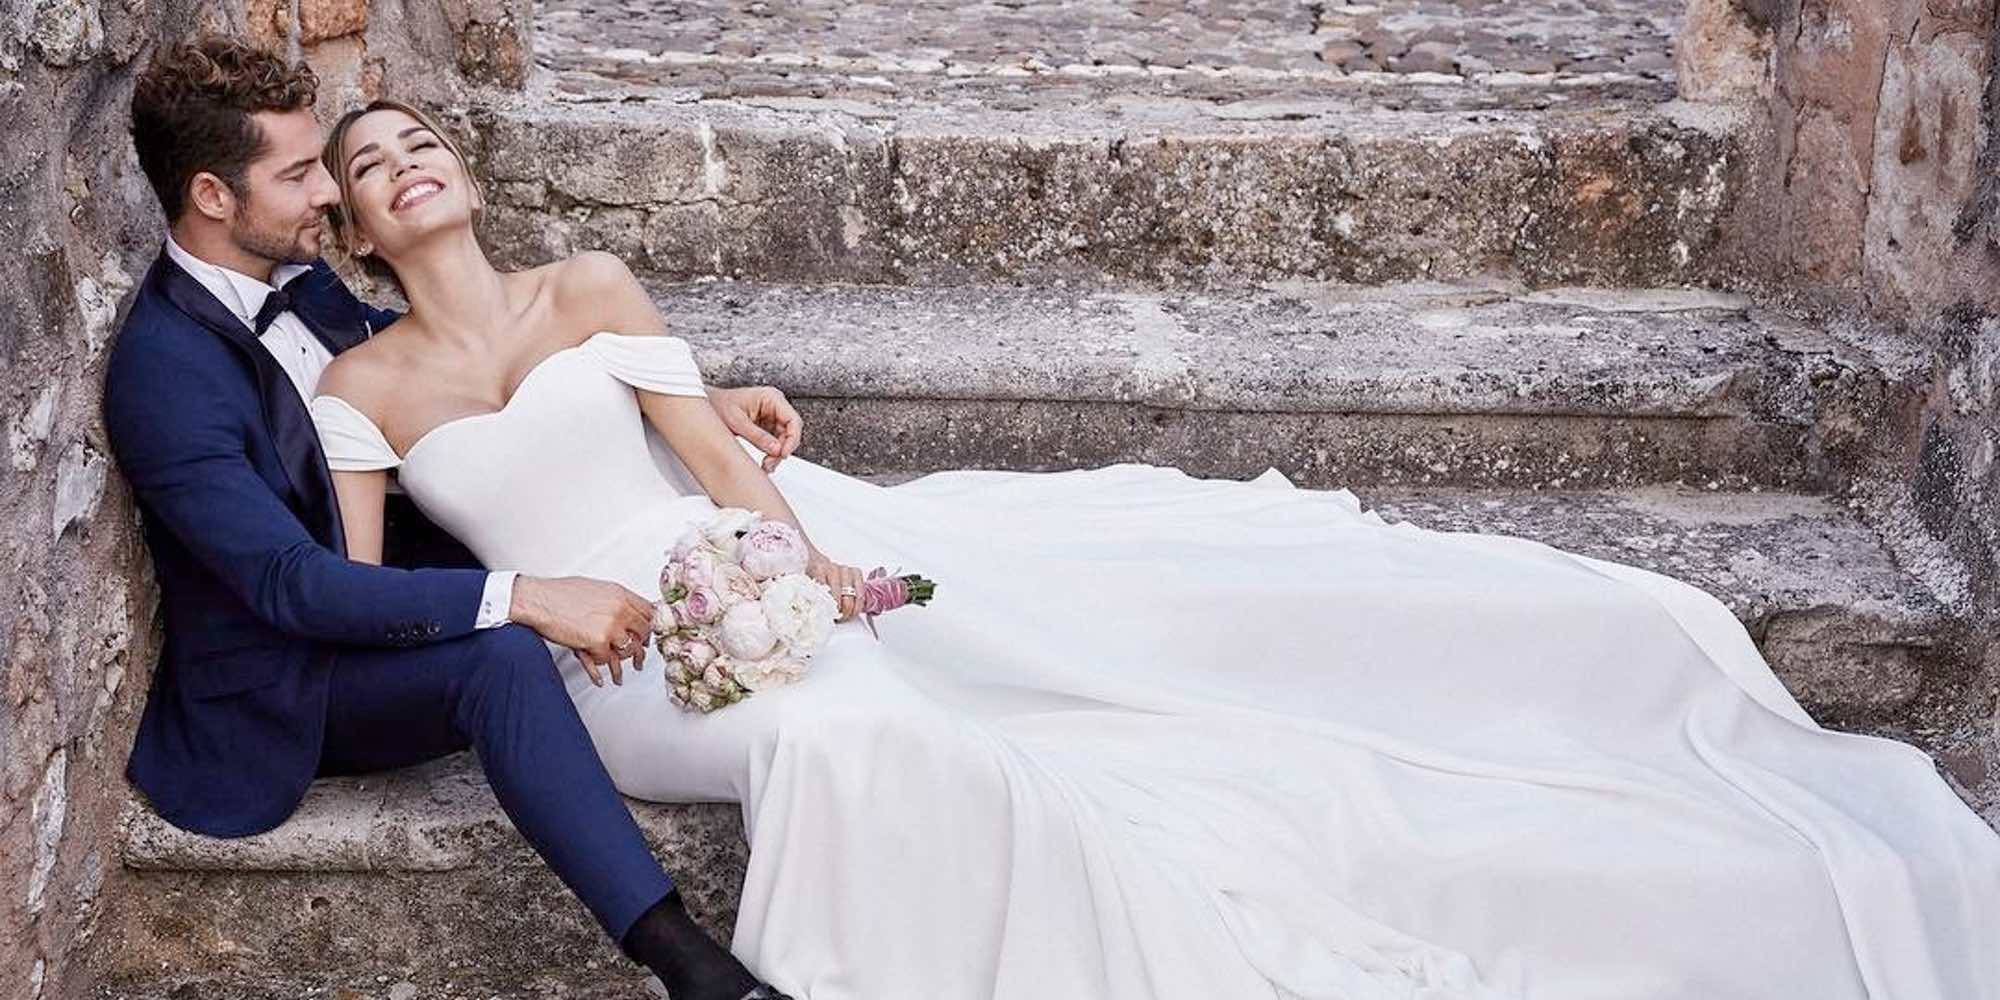 Rosanna Zanetti comparte una nueva foto de su boda con David Bisbal: "El amor crece sin límites"